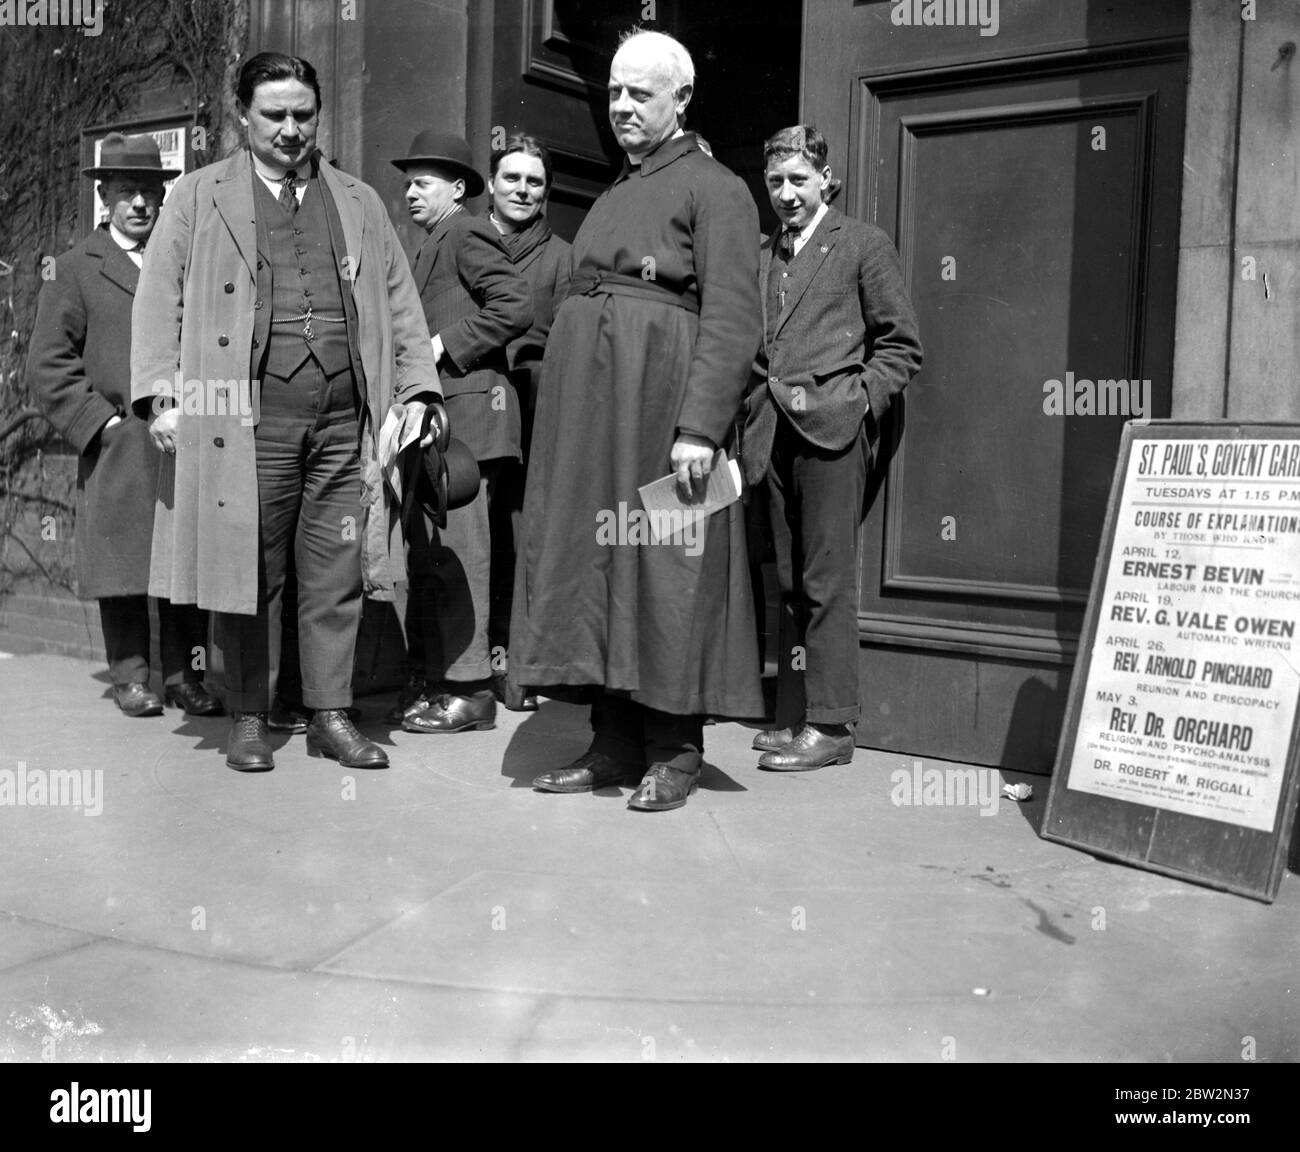 Ernest Bevin the Docker's K.C., e Canon Adderley al Covent Garden di St Paul, dove Bevin ha tenuto un discorso sulla crisi industriale. Foto Stock